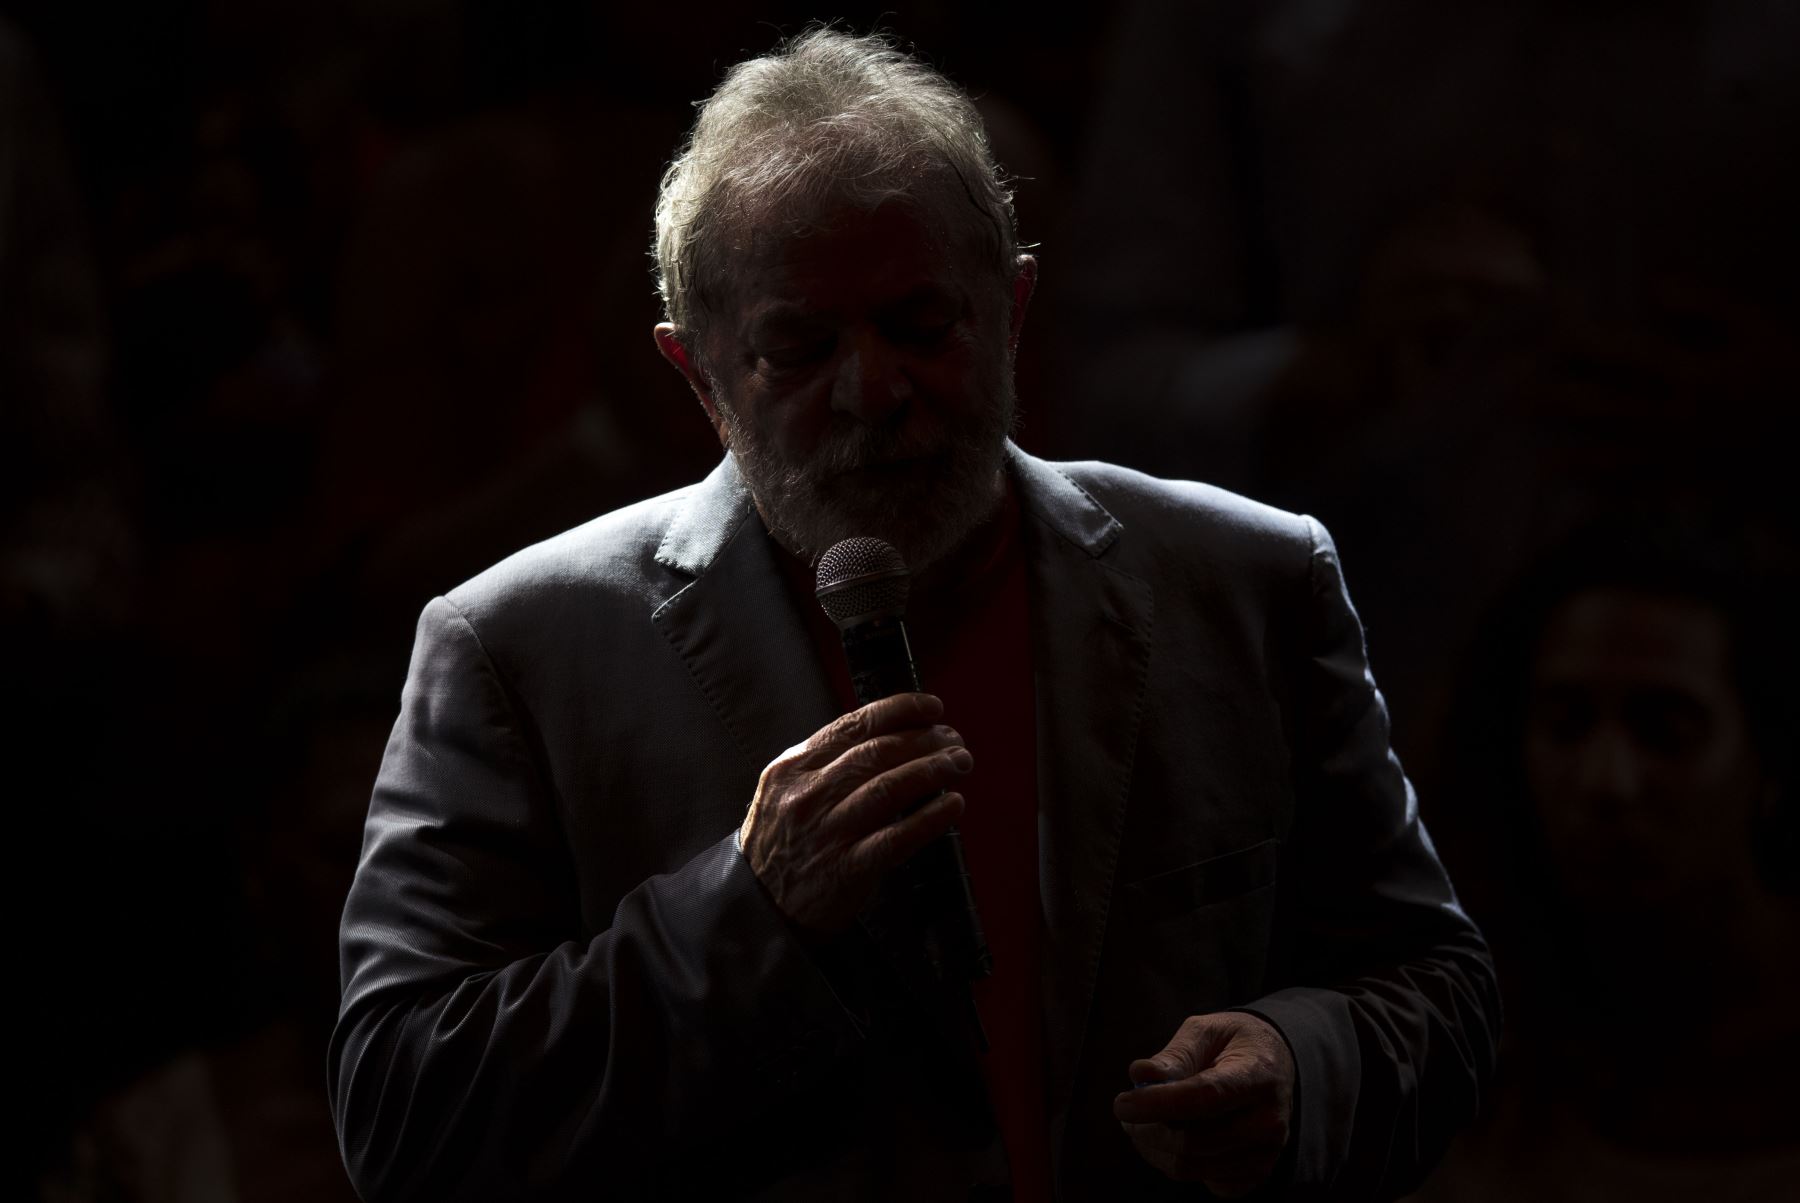 El expresidente brasileño (2003-2011) Luiz Inácio Lula da Silva habla durante una manifestación de partidos de izquierda en Río de Janeiro, Brasil. Foto: AFP.